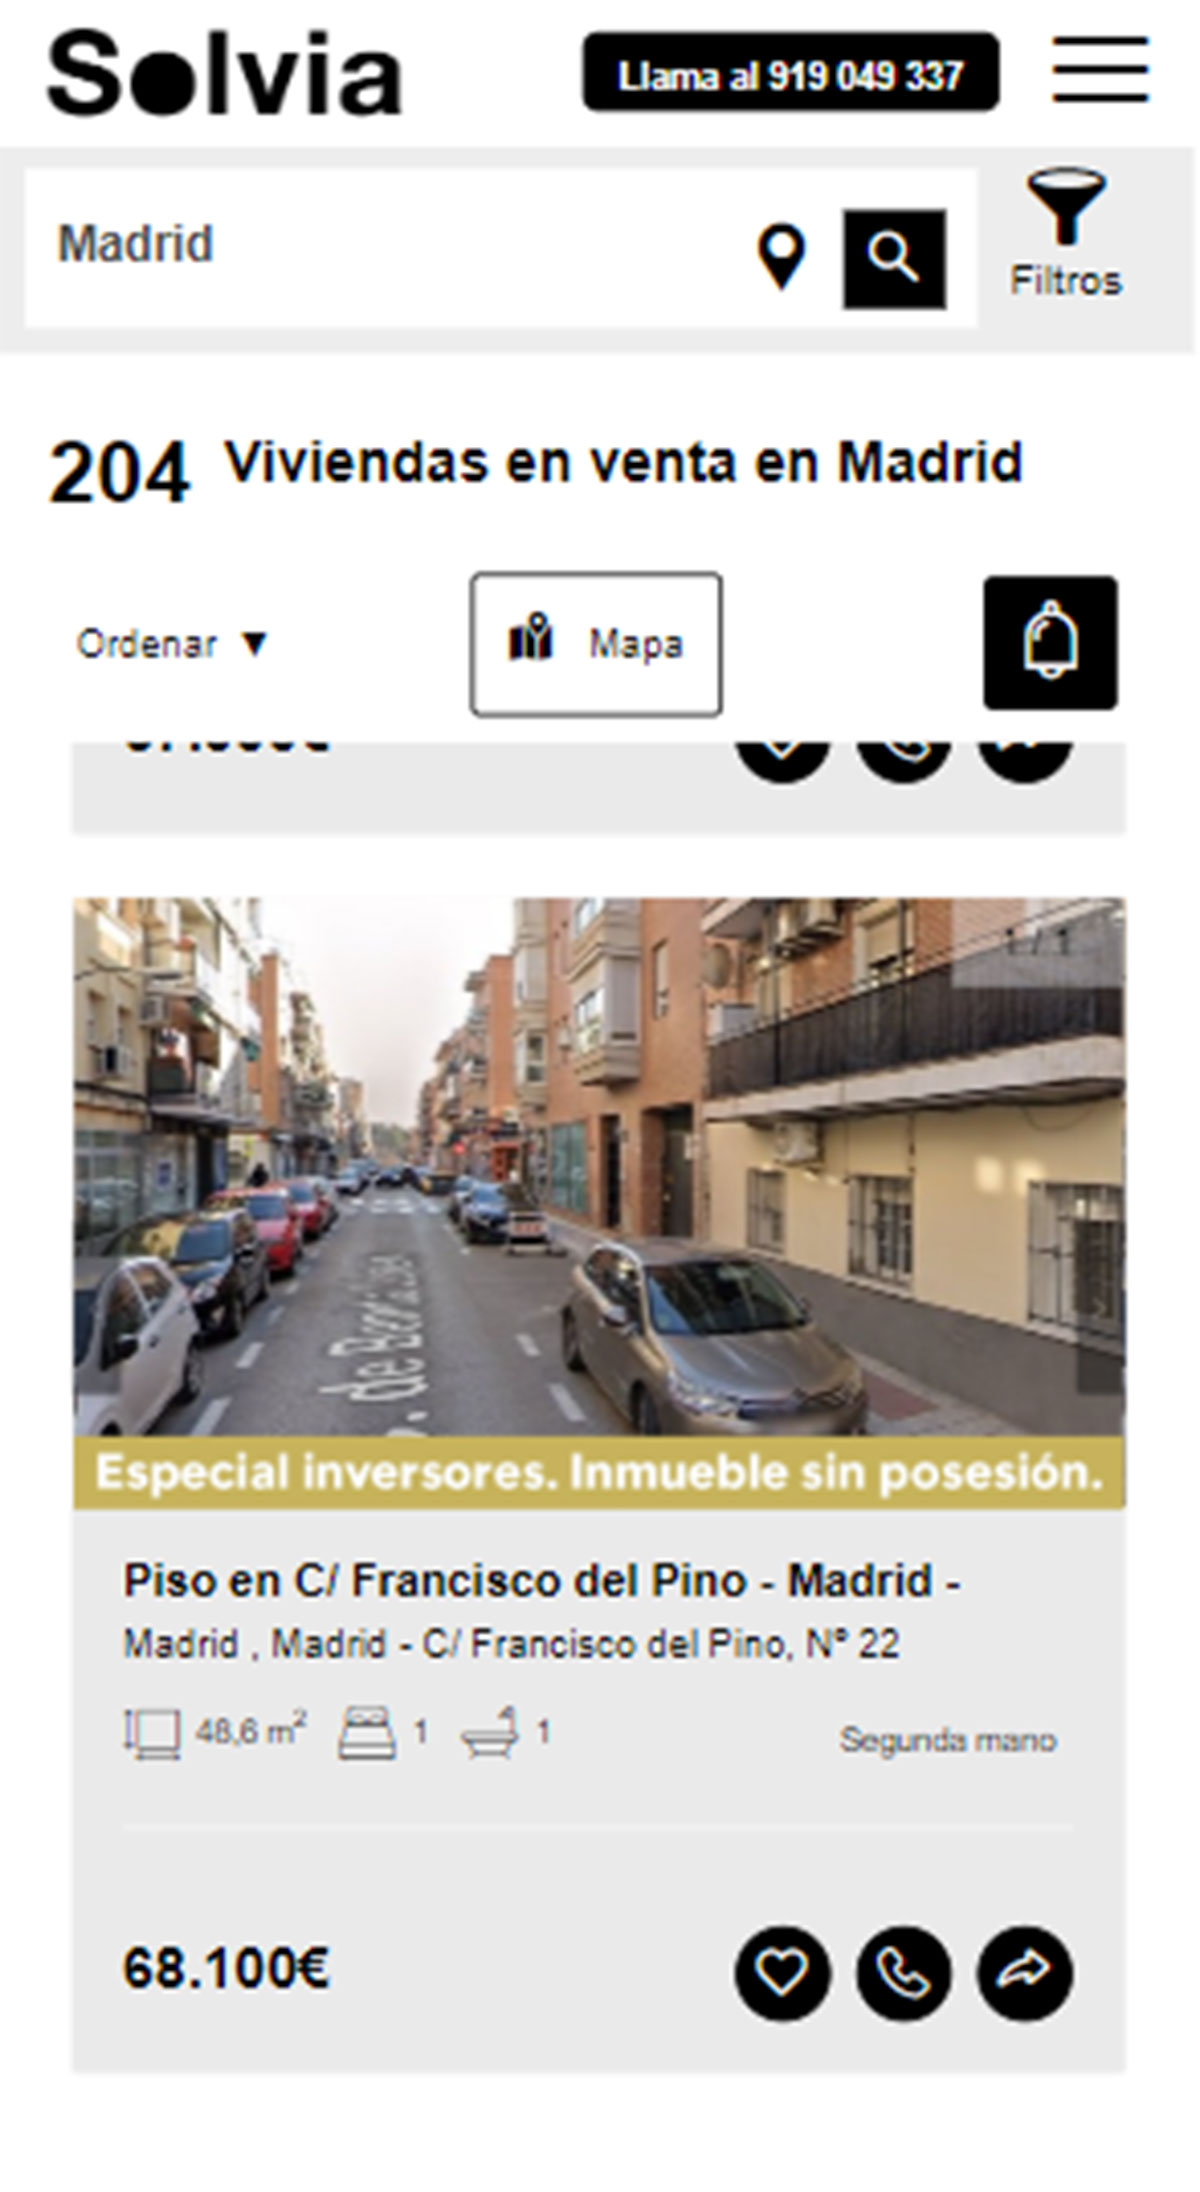 Piso en la ciudad de Madrid por 68.100 euros